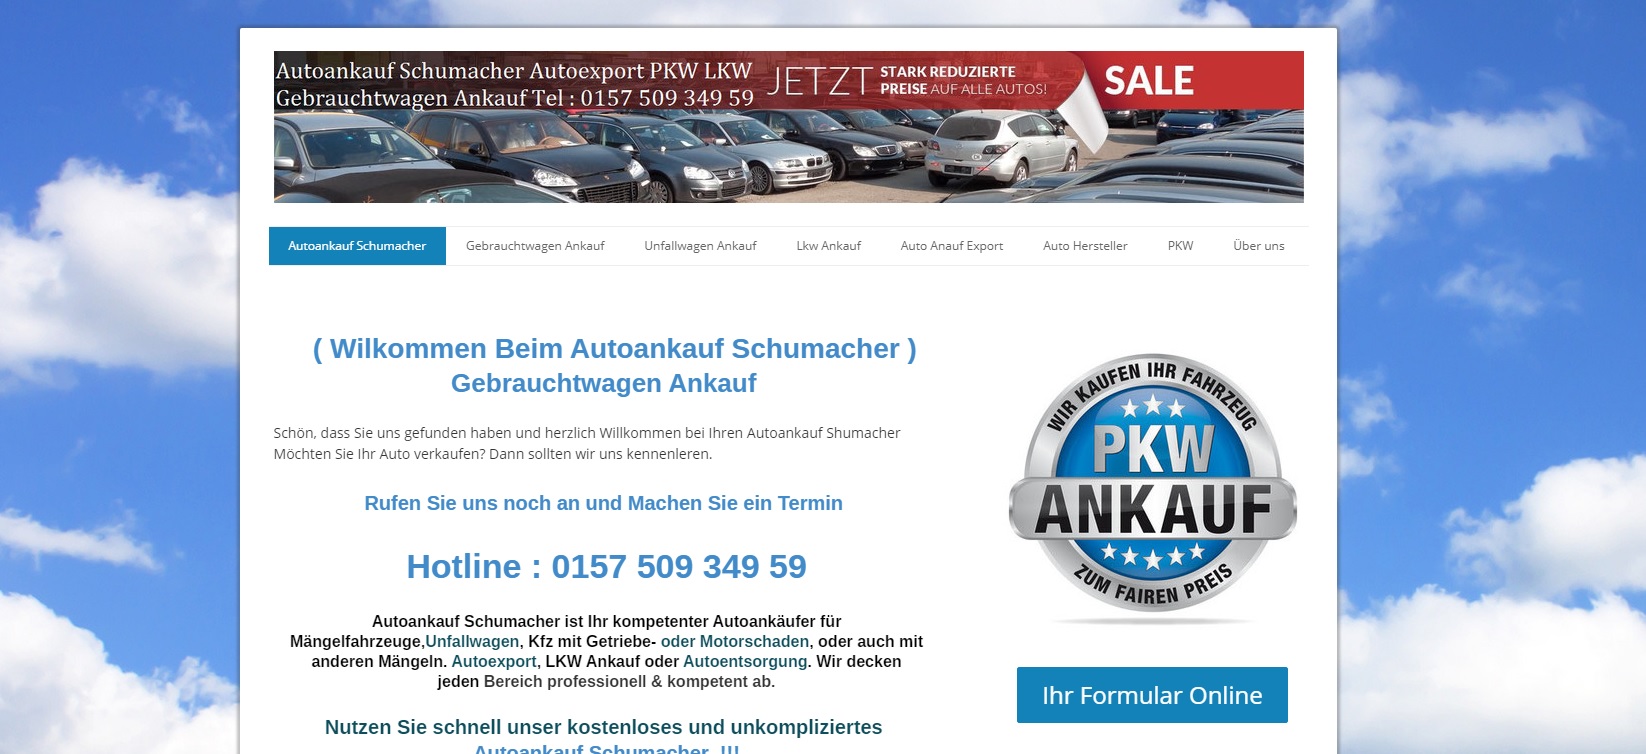 gelsenkirchen autoankauf shumacher moechten sie ihr auto verkaufen - Gelsenkirchen – Autoankauf Shumacher Möchten Sie Ihr Auto verkaufen?